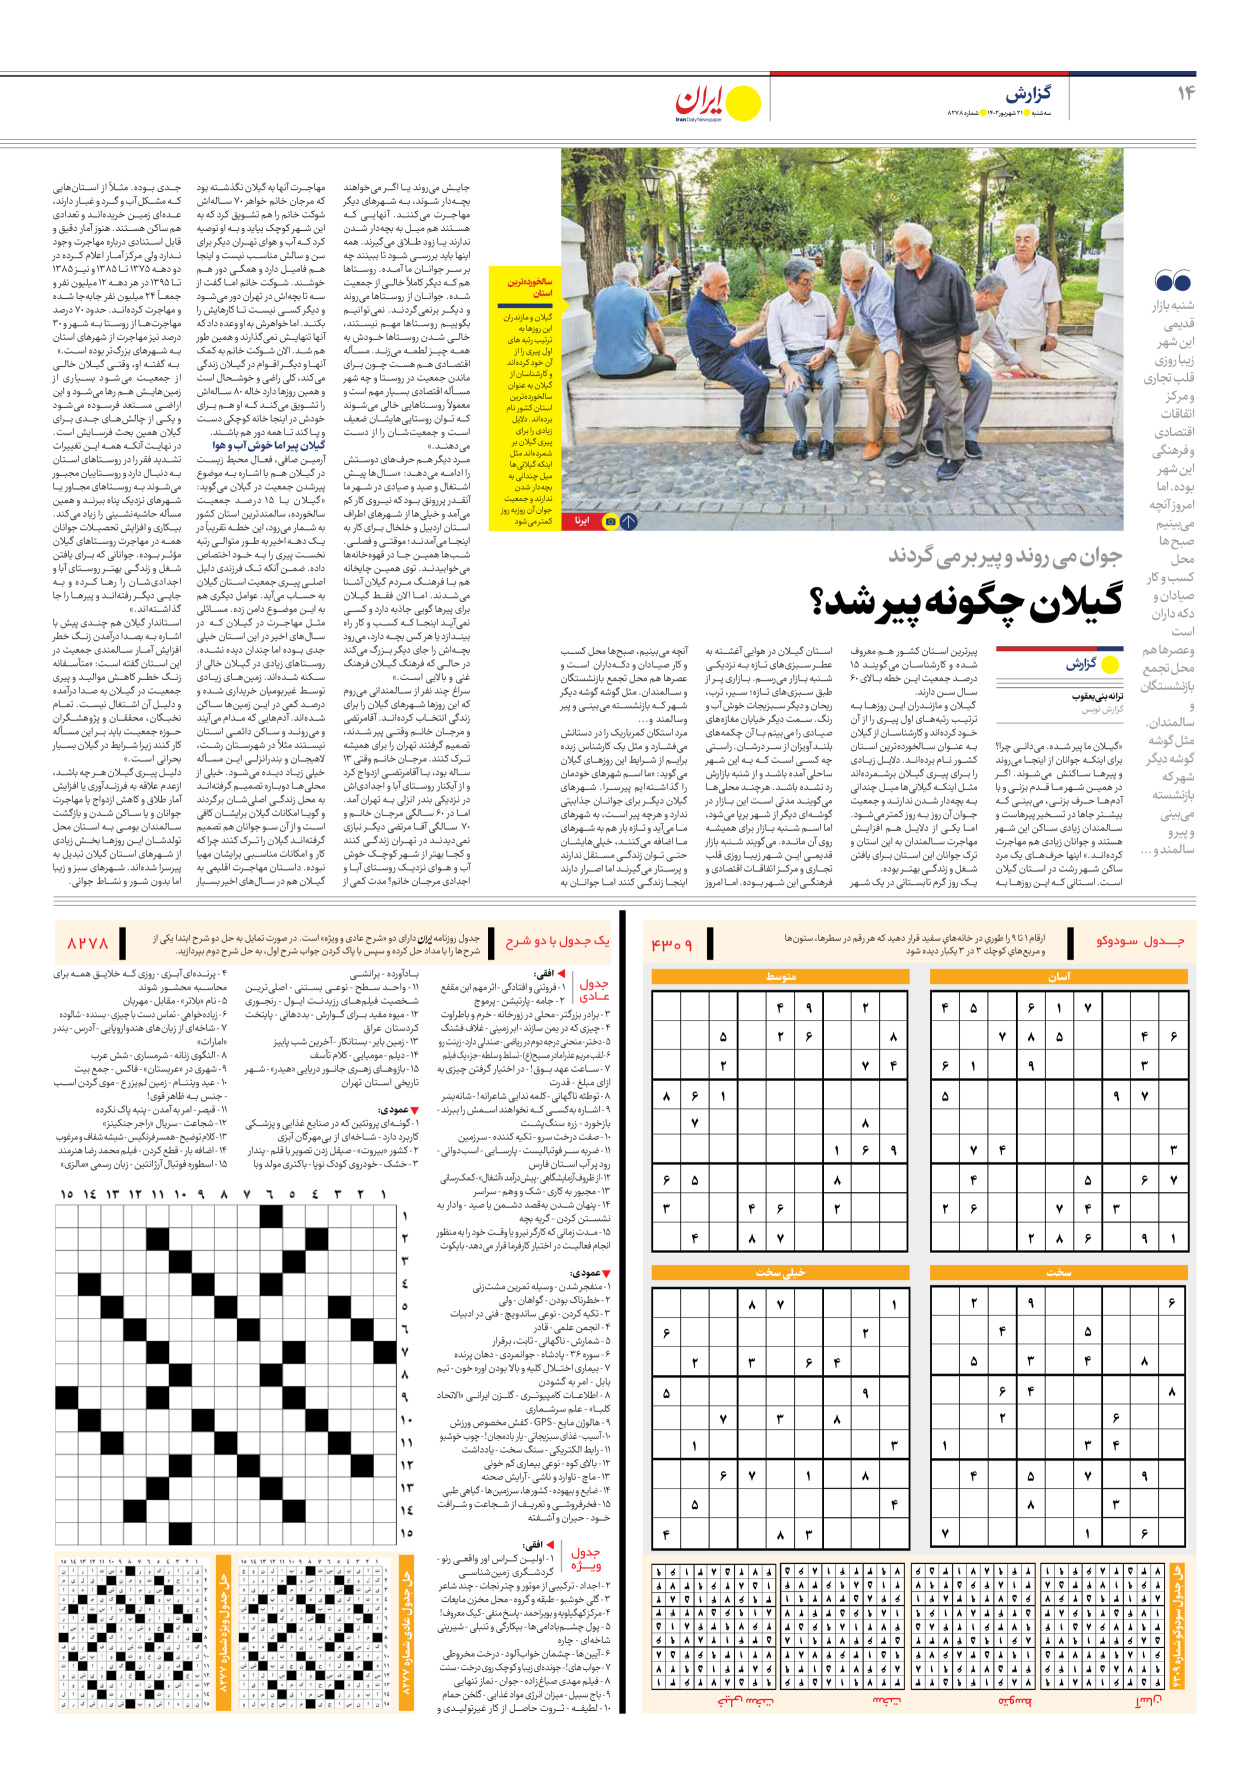 روزنامه ایران - شماره هشت هزار و دویست و هفتاد و هشت - ۲۱ شهریور ۱۴۰۲ - صفحه ۱۴